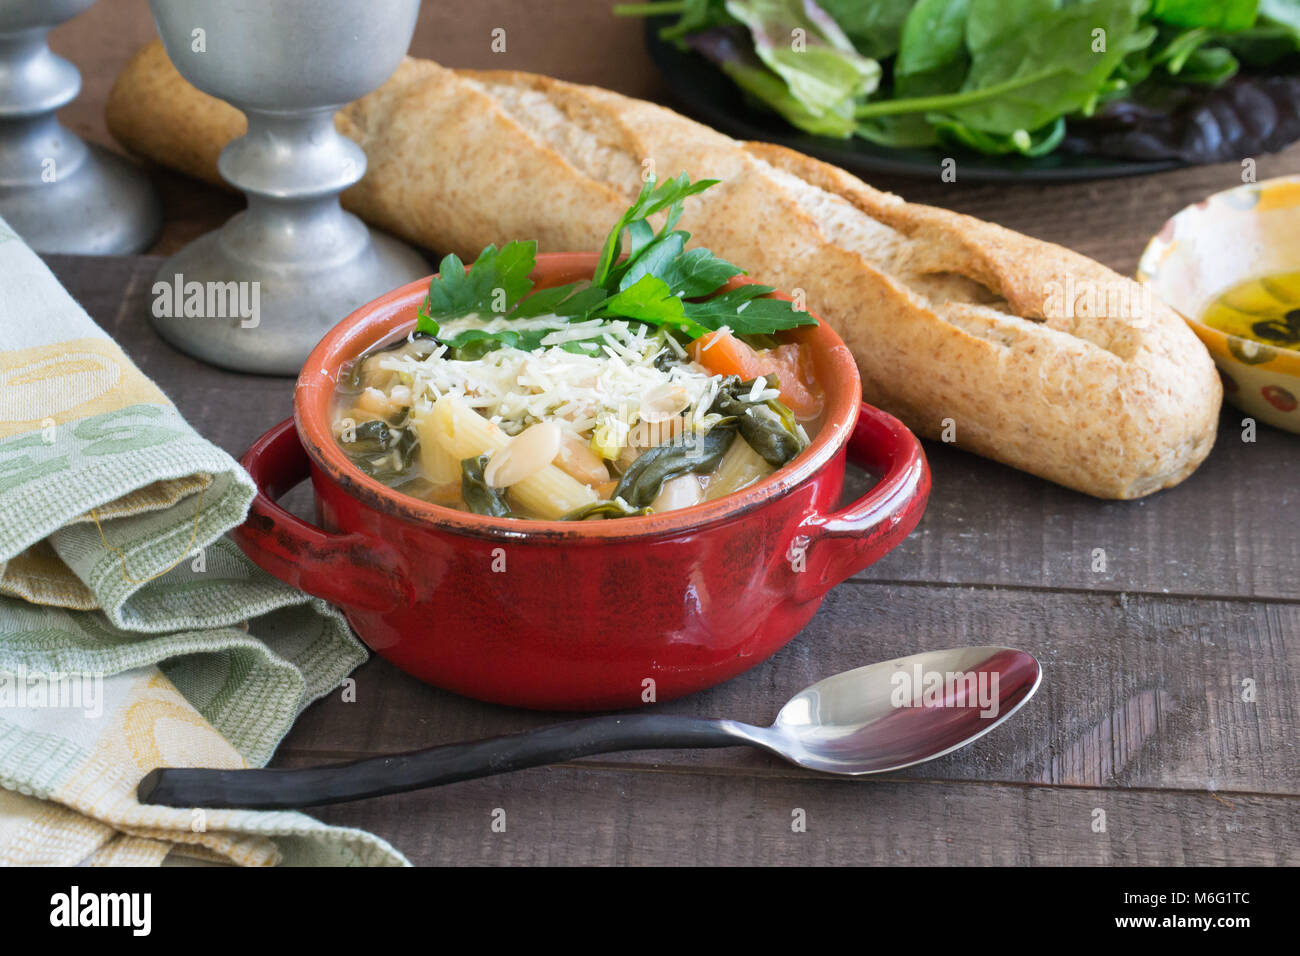 Herzhaftes aus weißen Bohnen und Gemüse Suppe Eintopf serviert in einem  roten Topf mit einem Laib Weizen französischem Brot. Essen Szene,  hausgemachte Güte Stockfotografie - Alamy